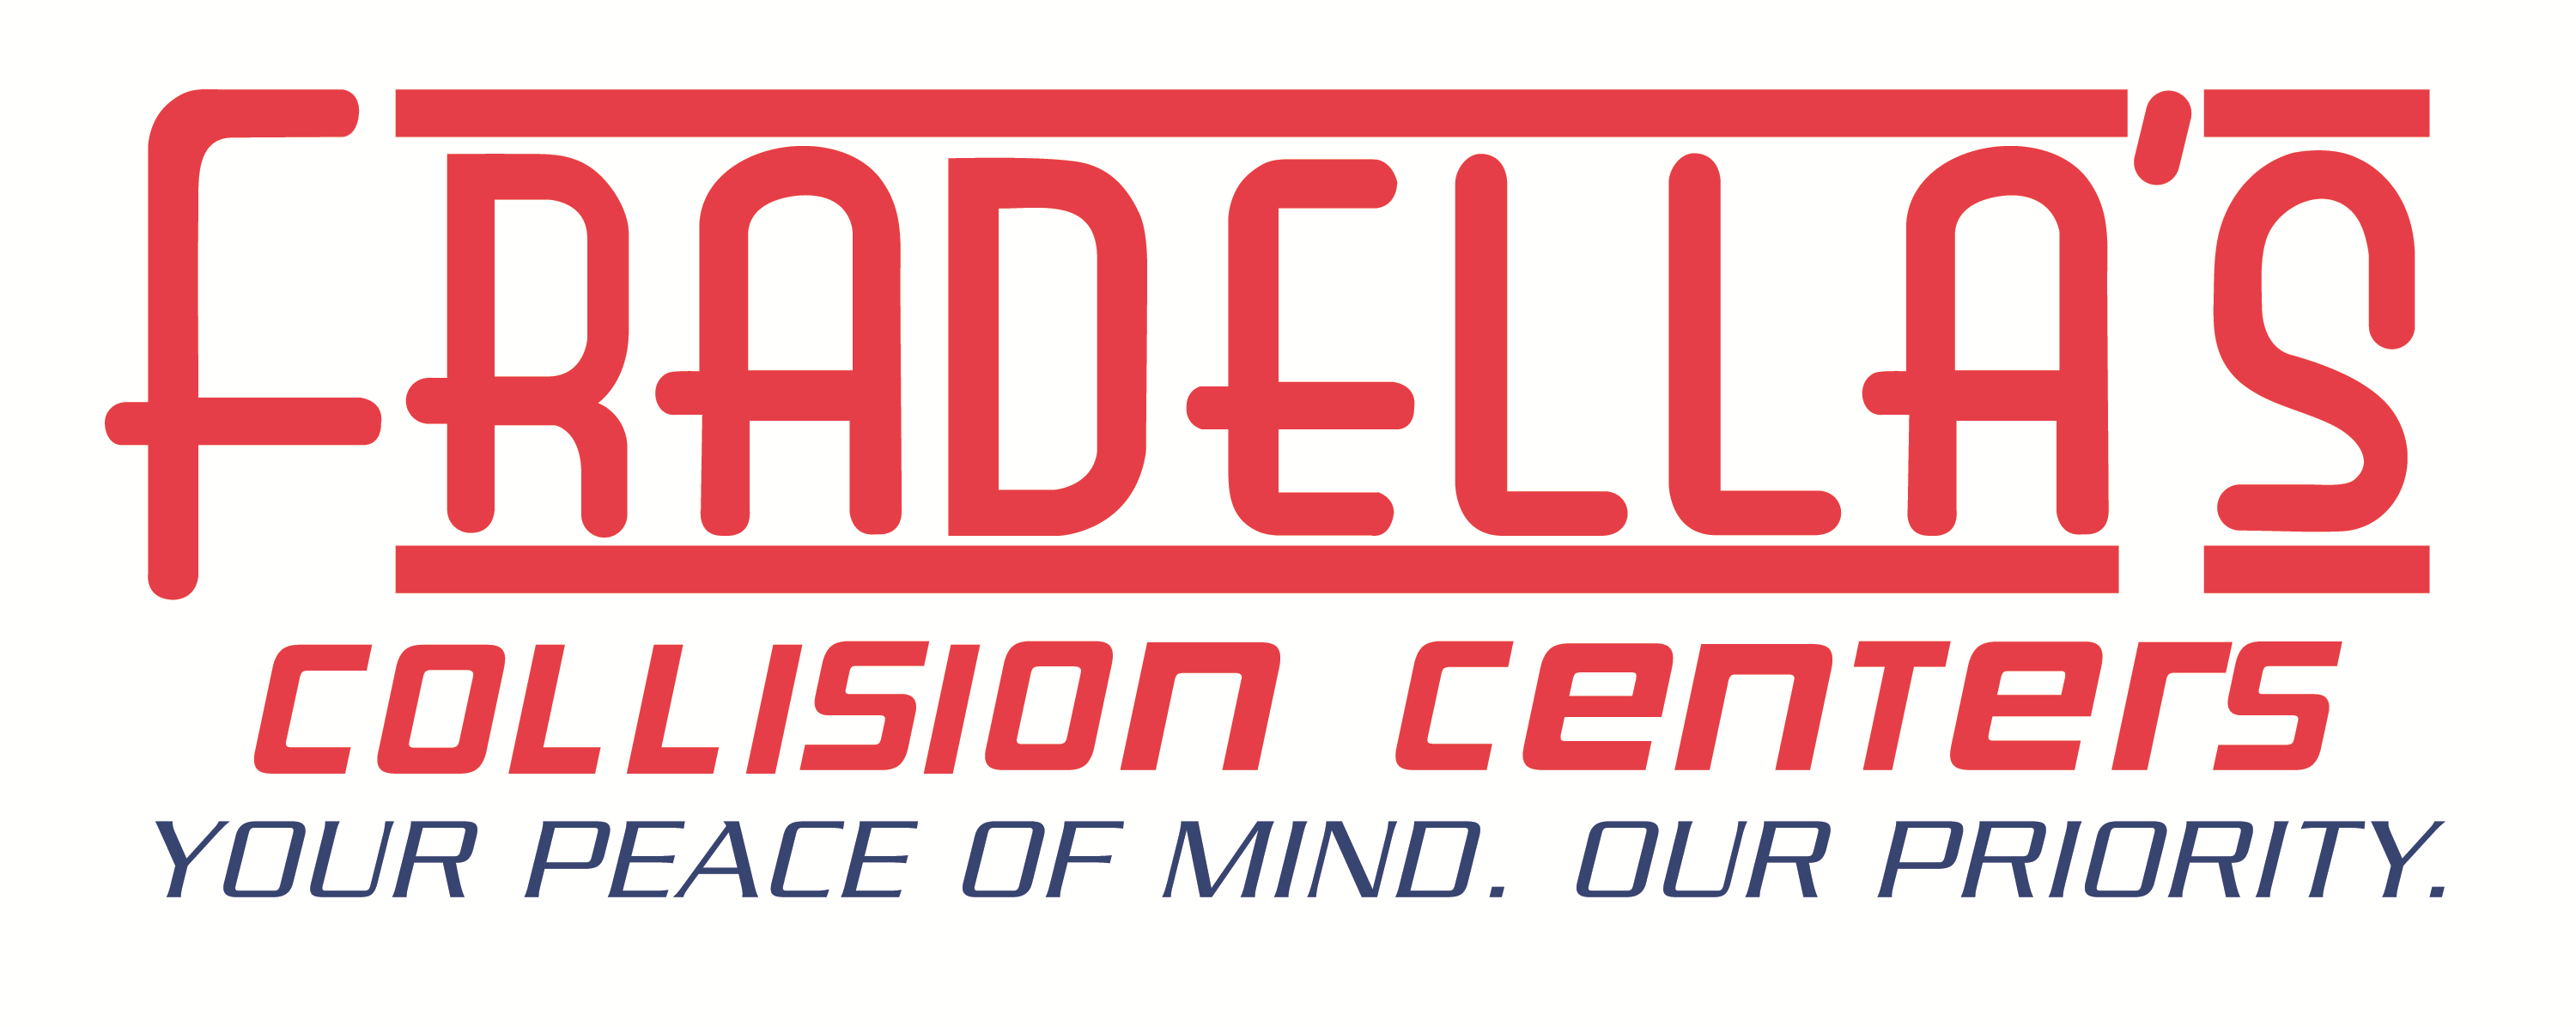 Fradella's Collision Centers logo